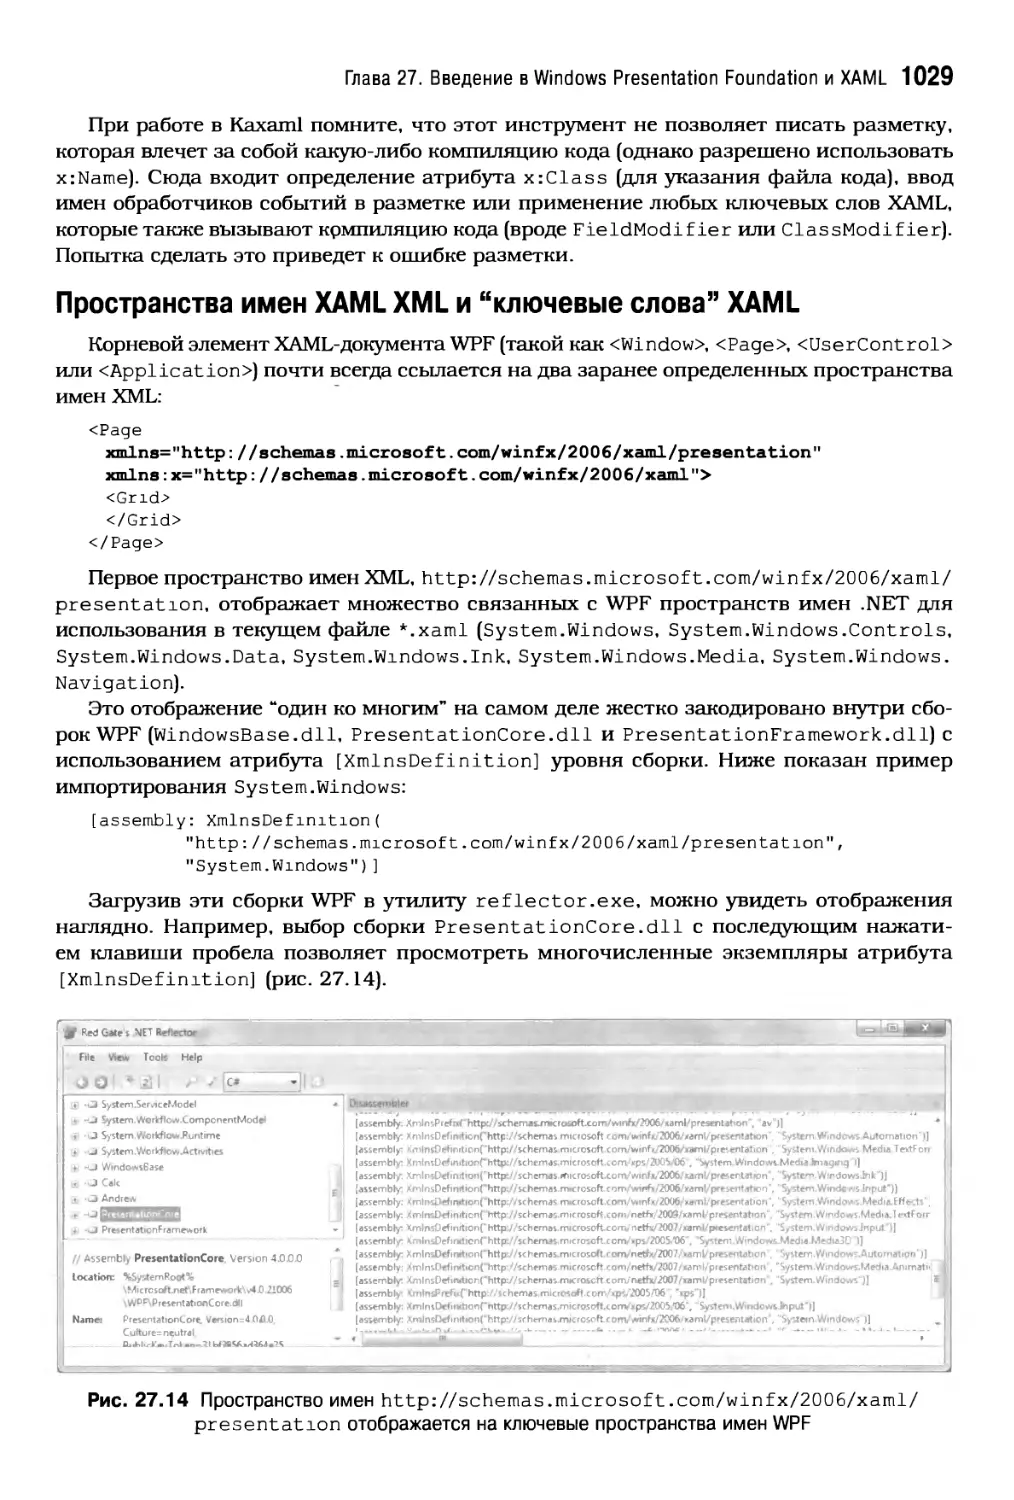 Пространства имен XAML XML и \